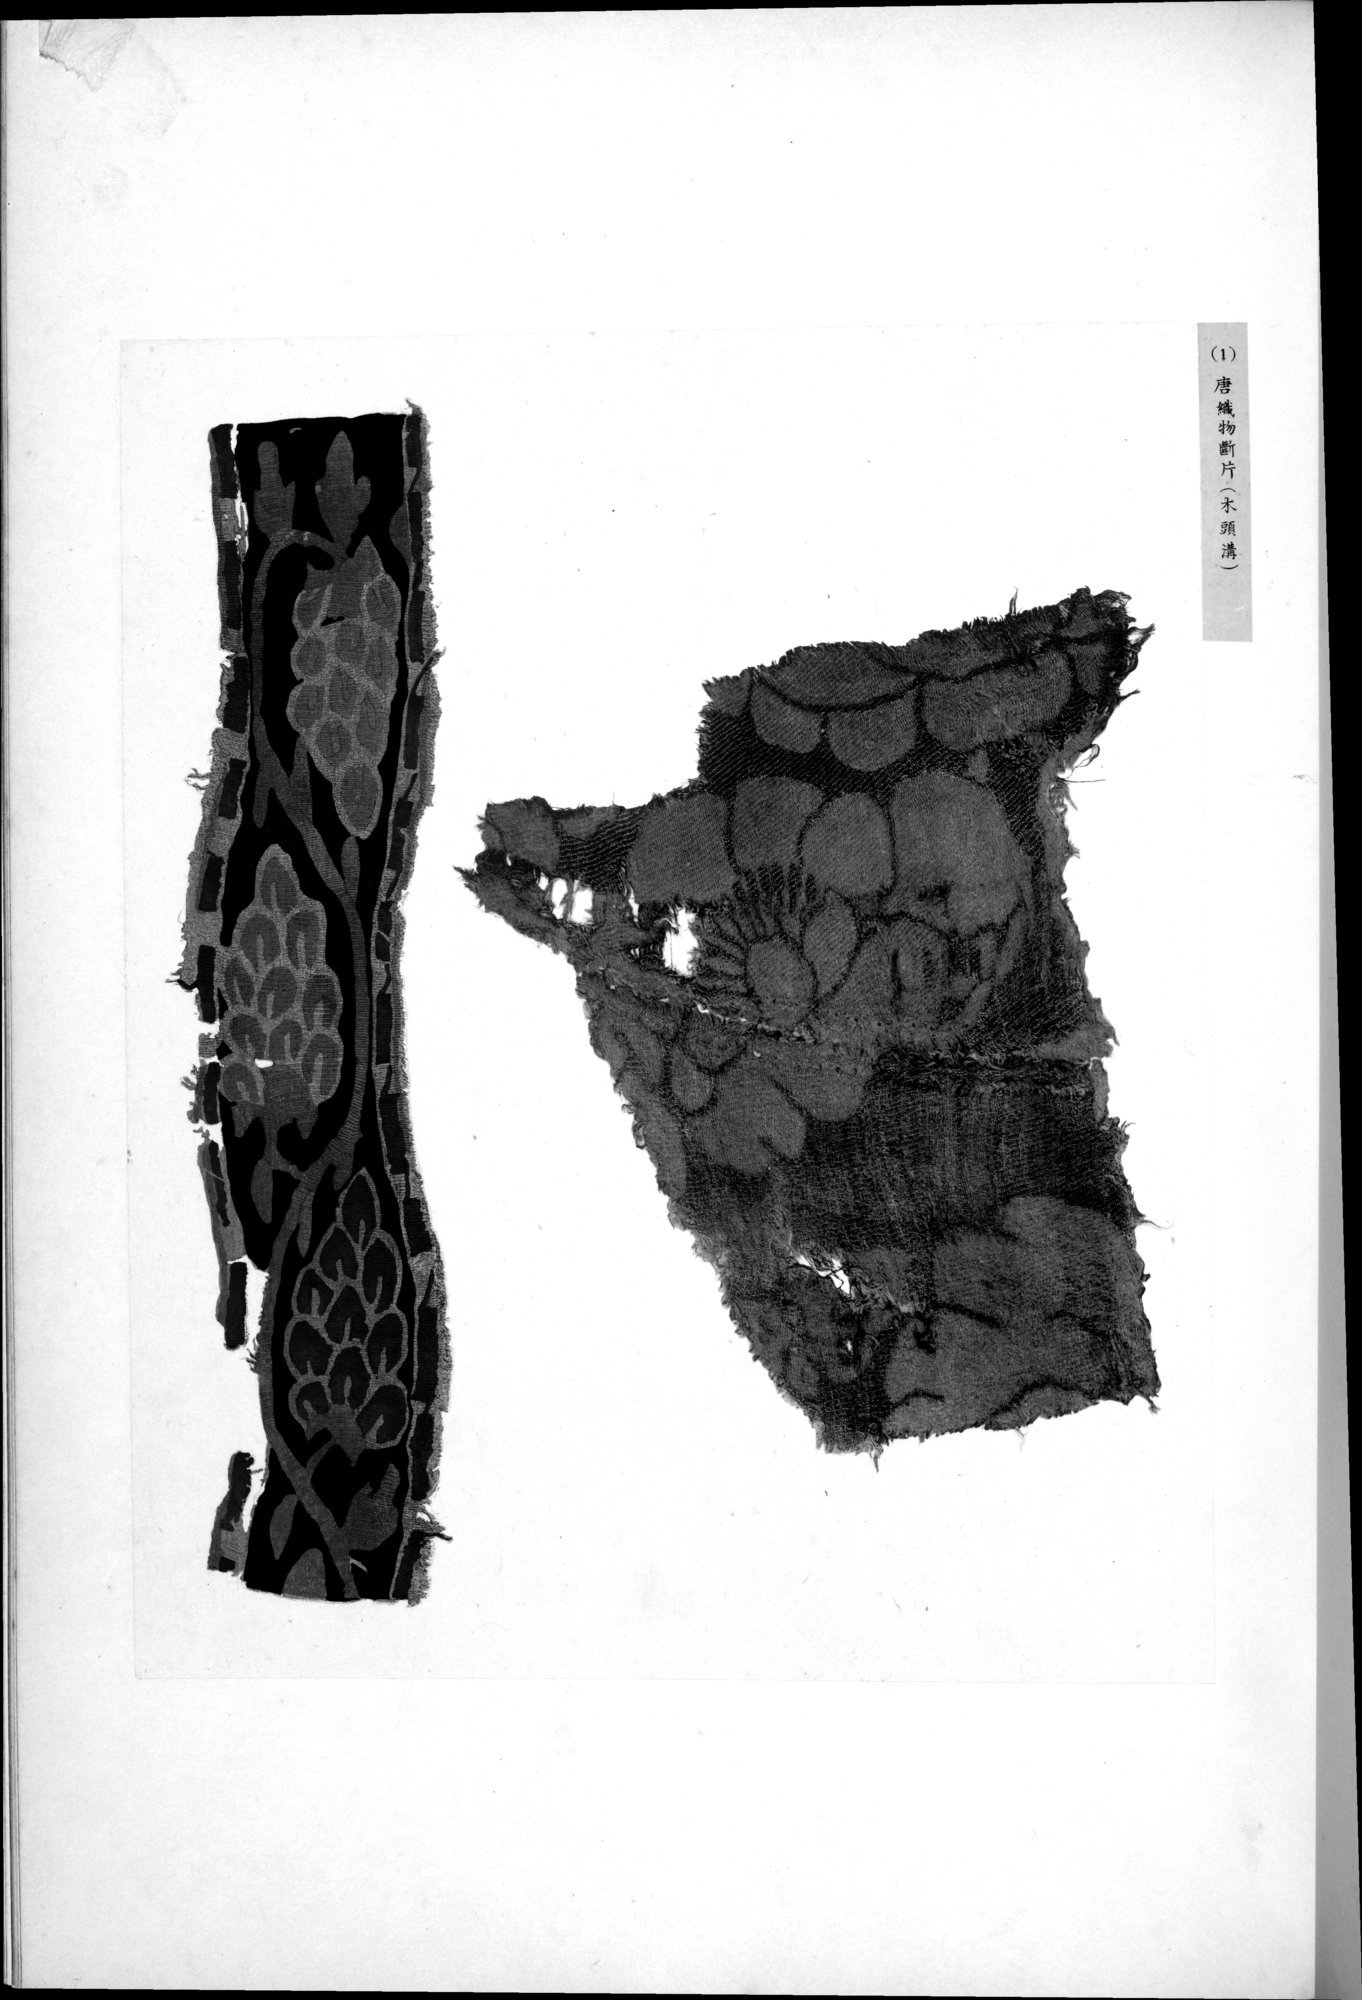 西域考古図譜 : vol.1 / Page 171 (Grayscale High Resolution Image)